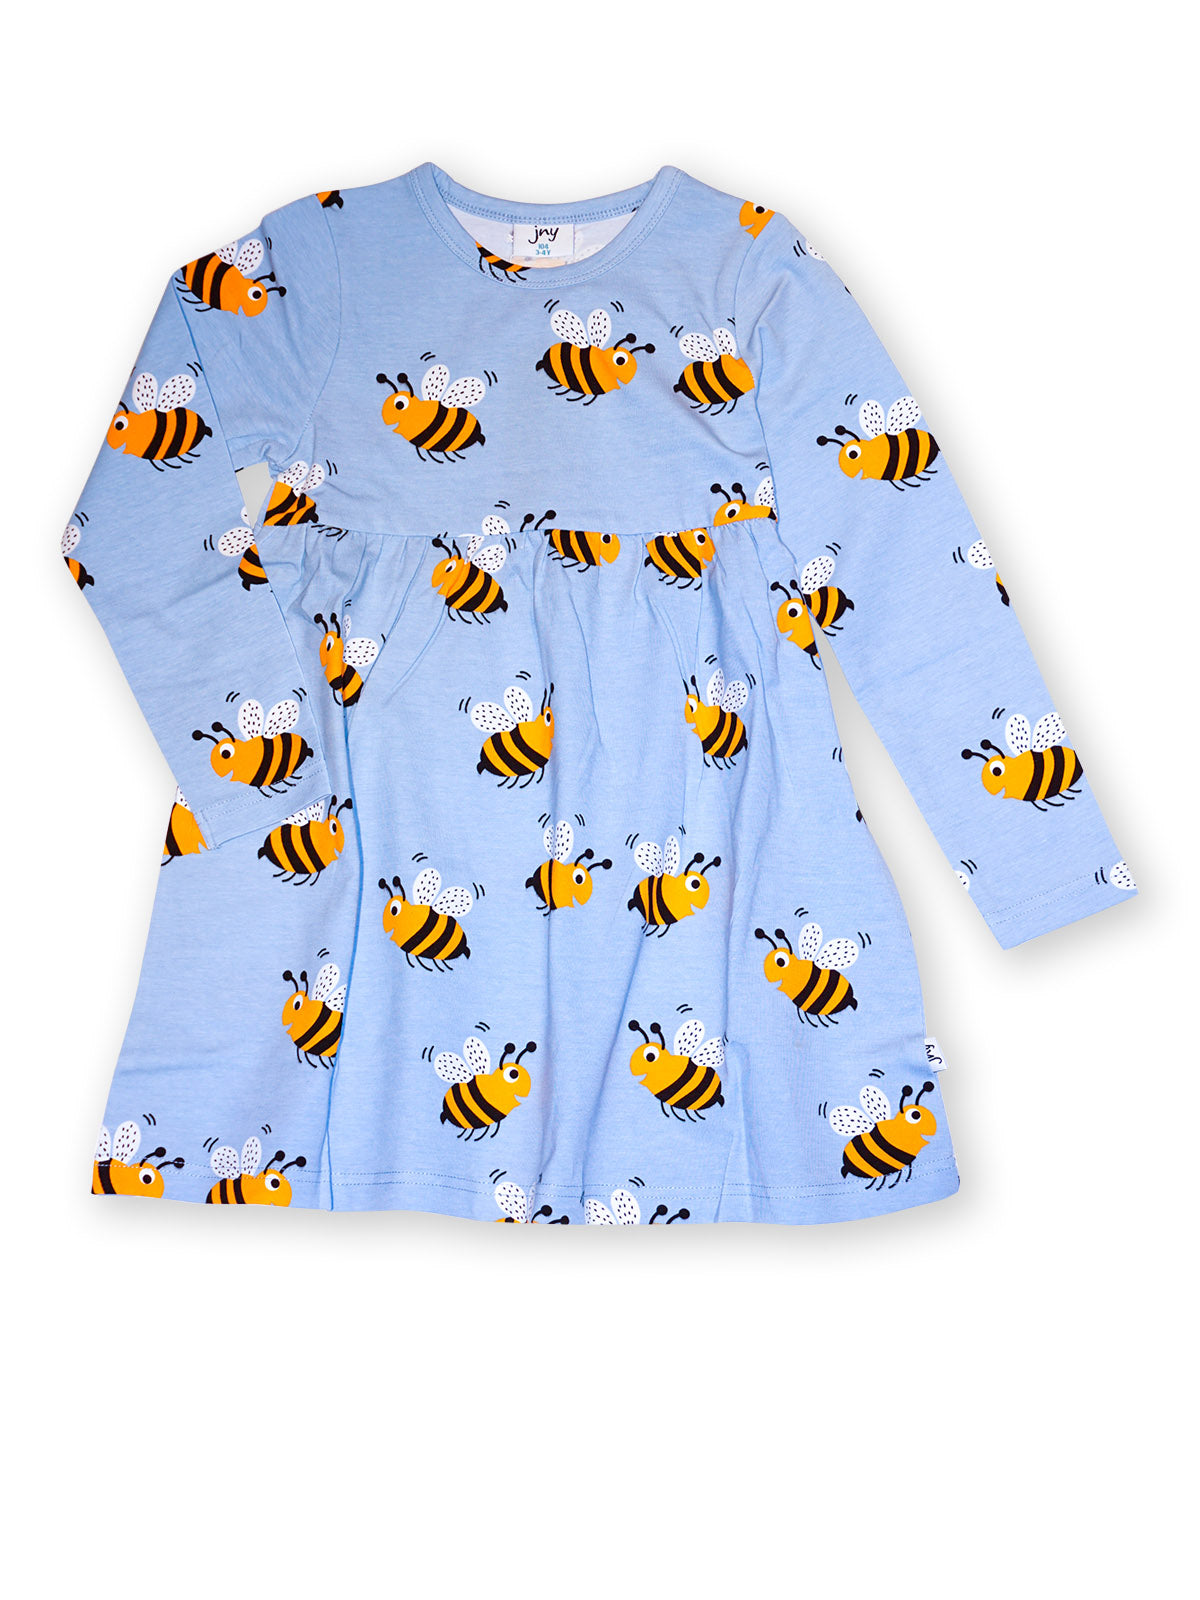 JNY - LS Sweetdress - Bumblebee